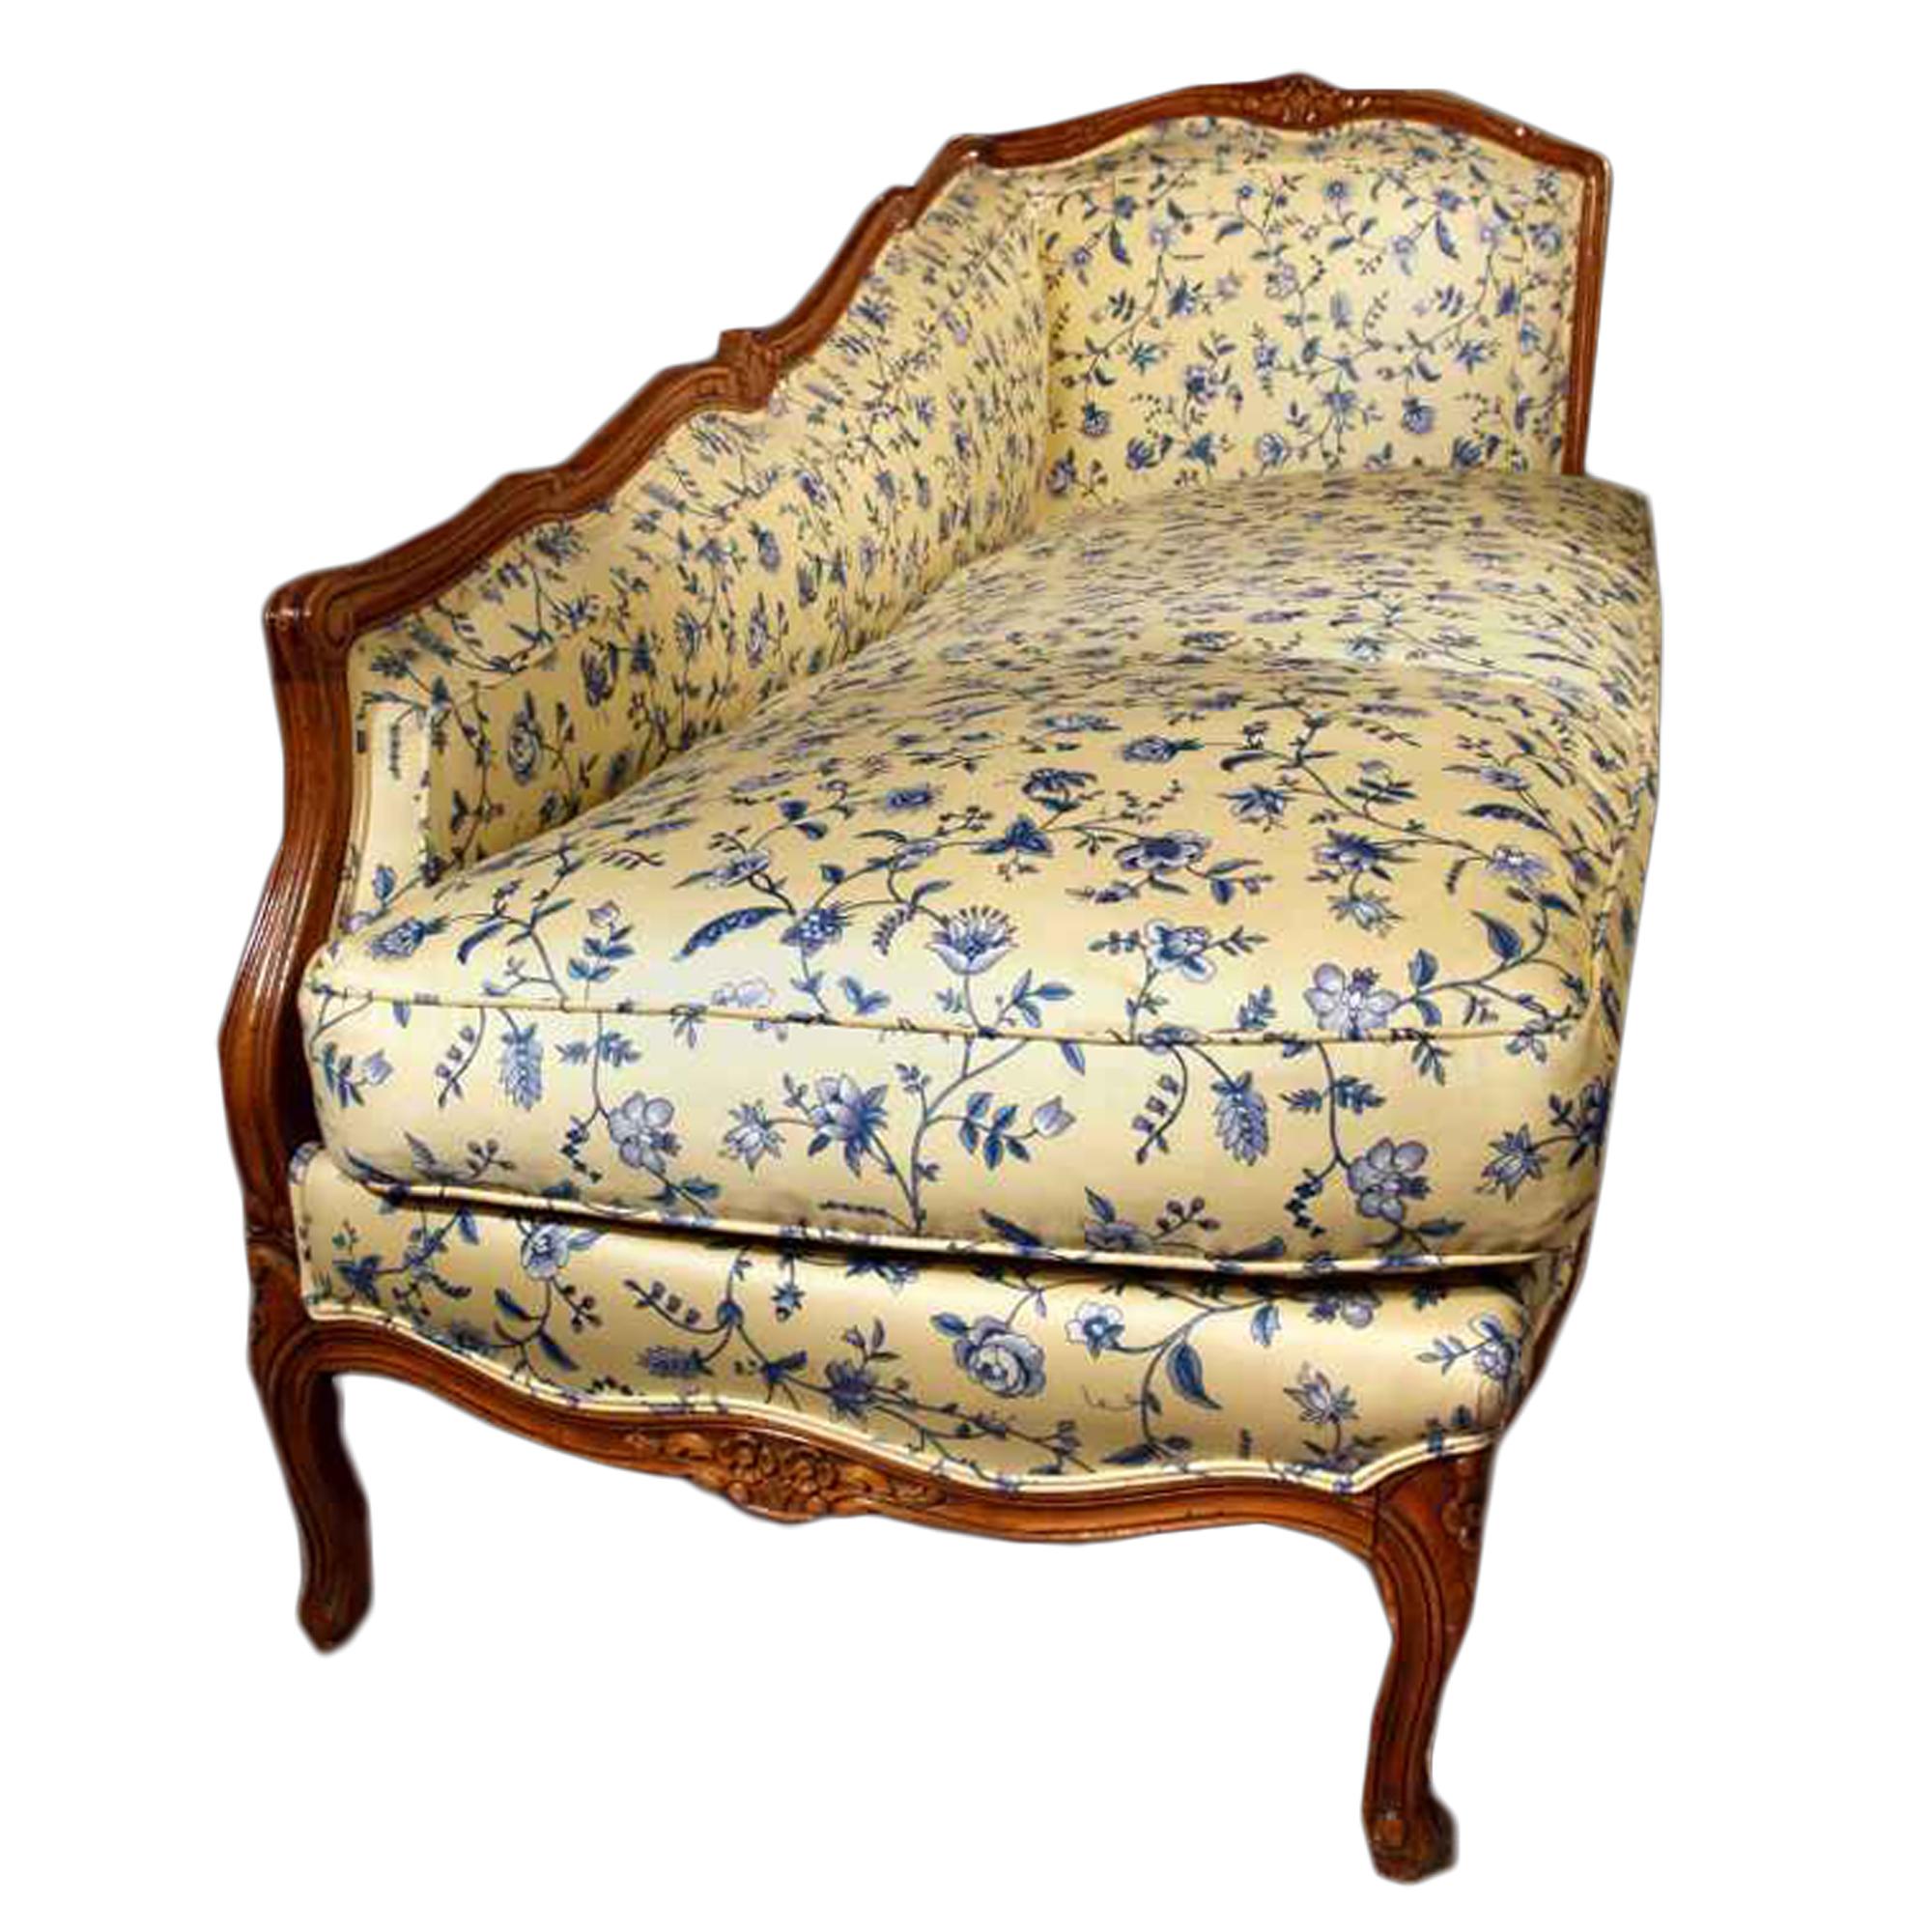 Une élégante et inhabituelle chaise de salon en chêne couleur miel de style Louis XVI de la fin du 19ème siècle. Tapissé sur tous les côtés d'un beau tissu bleu et jaune. Reposant sur six supports à volutes en 